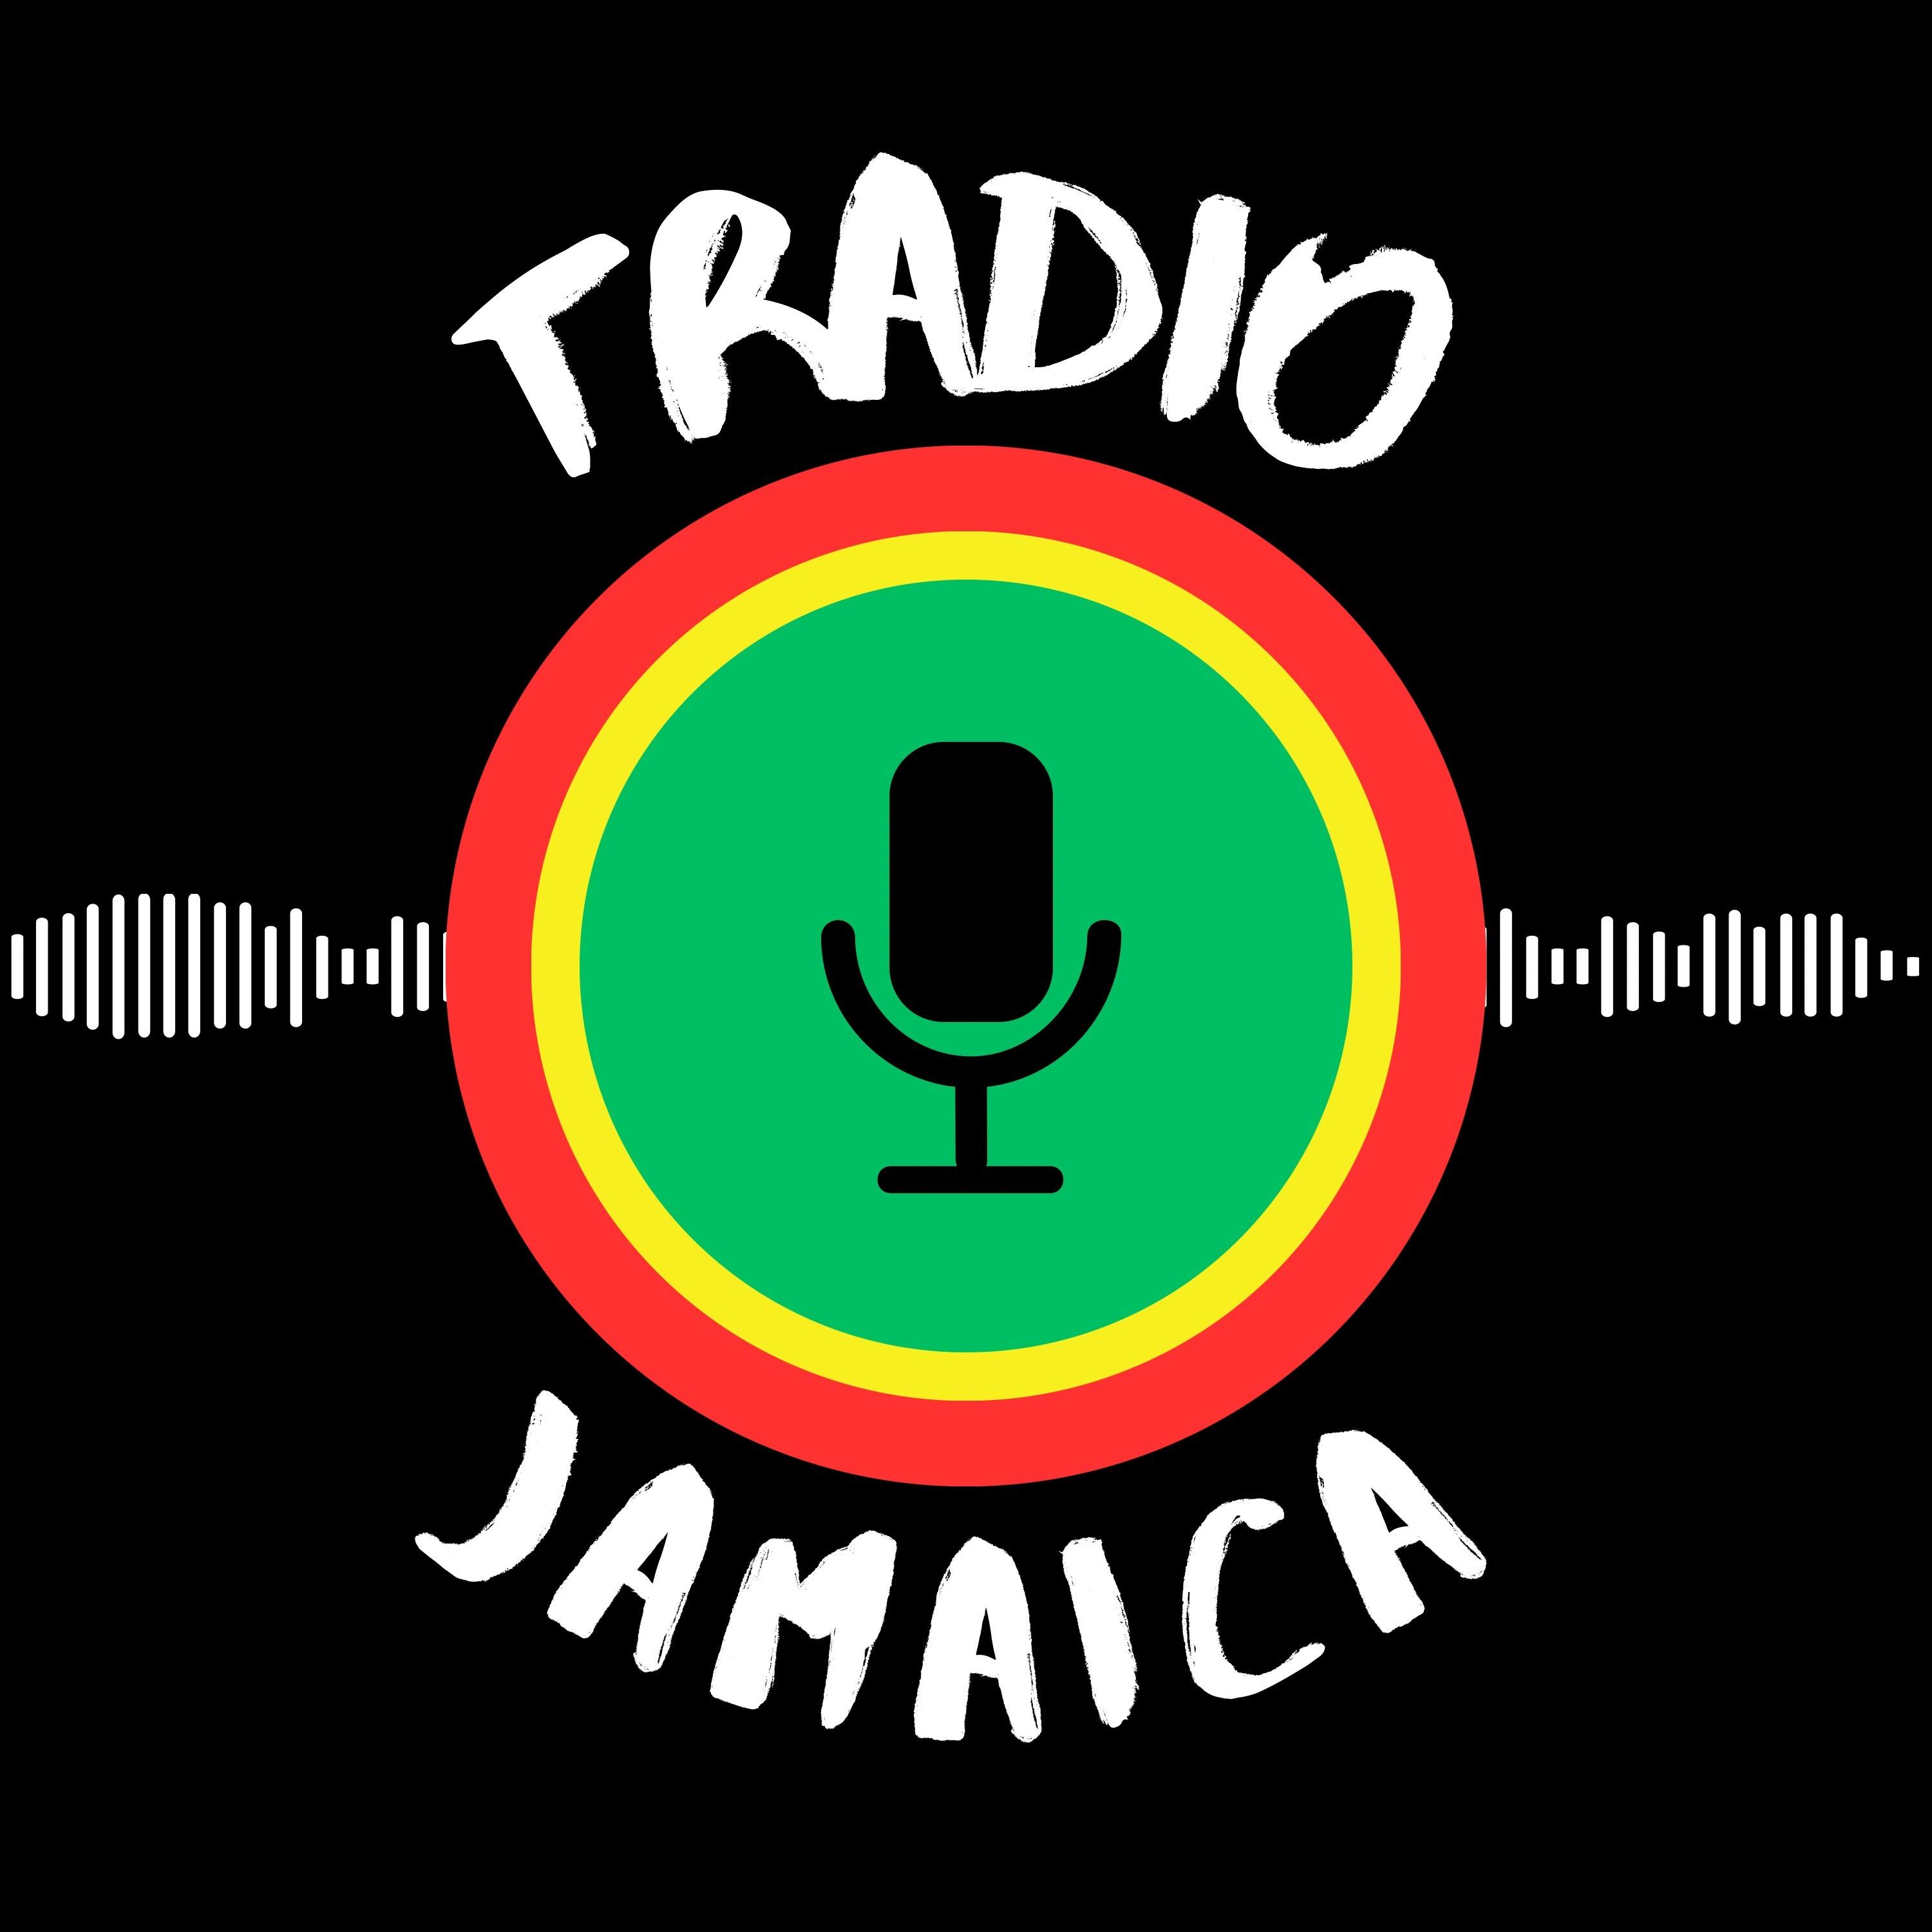 Tradio Jamaica